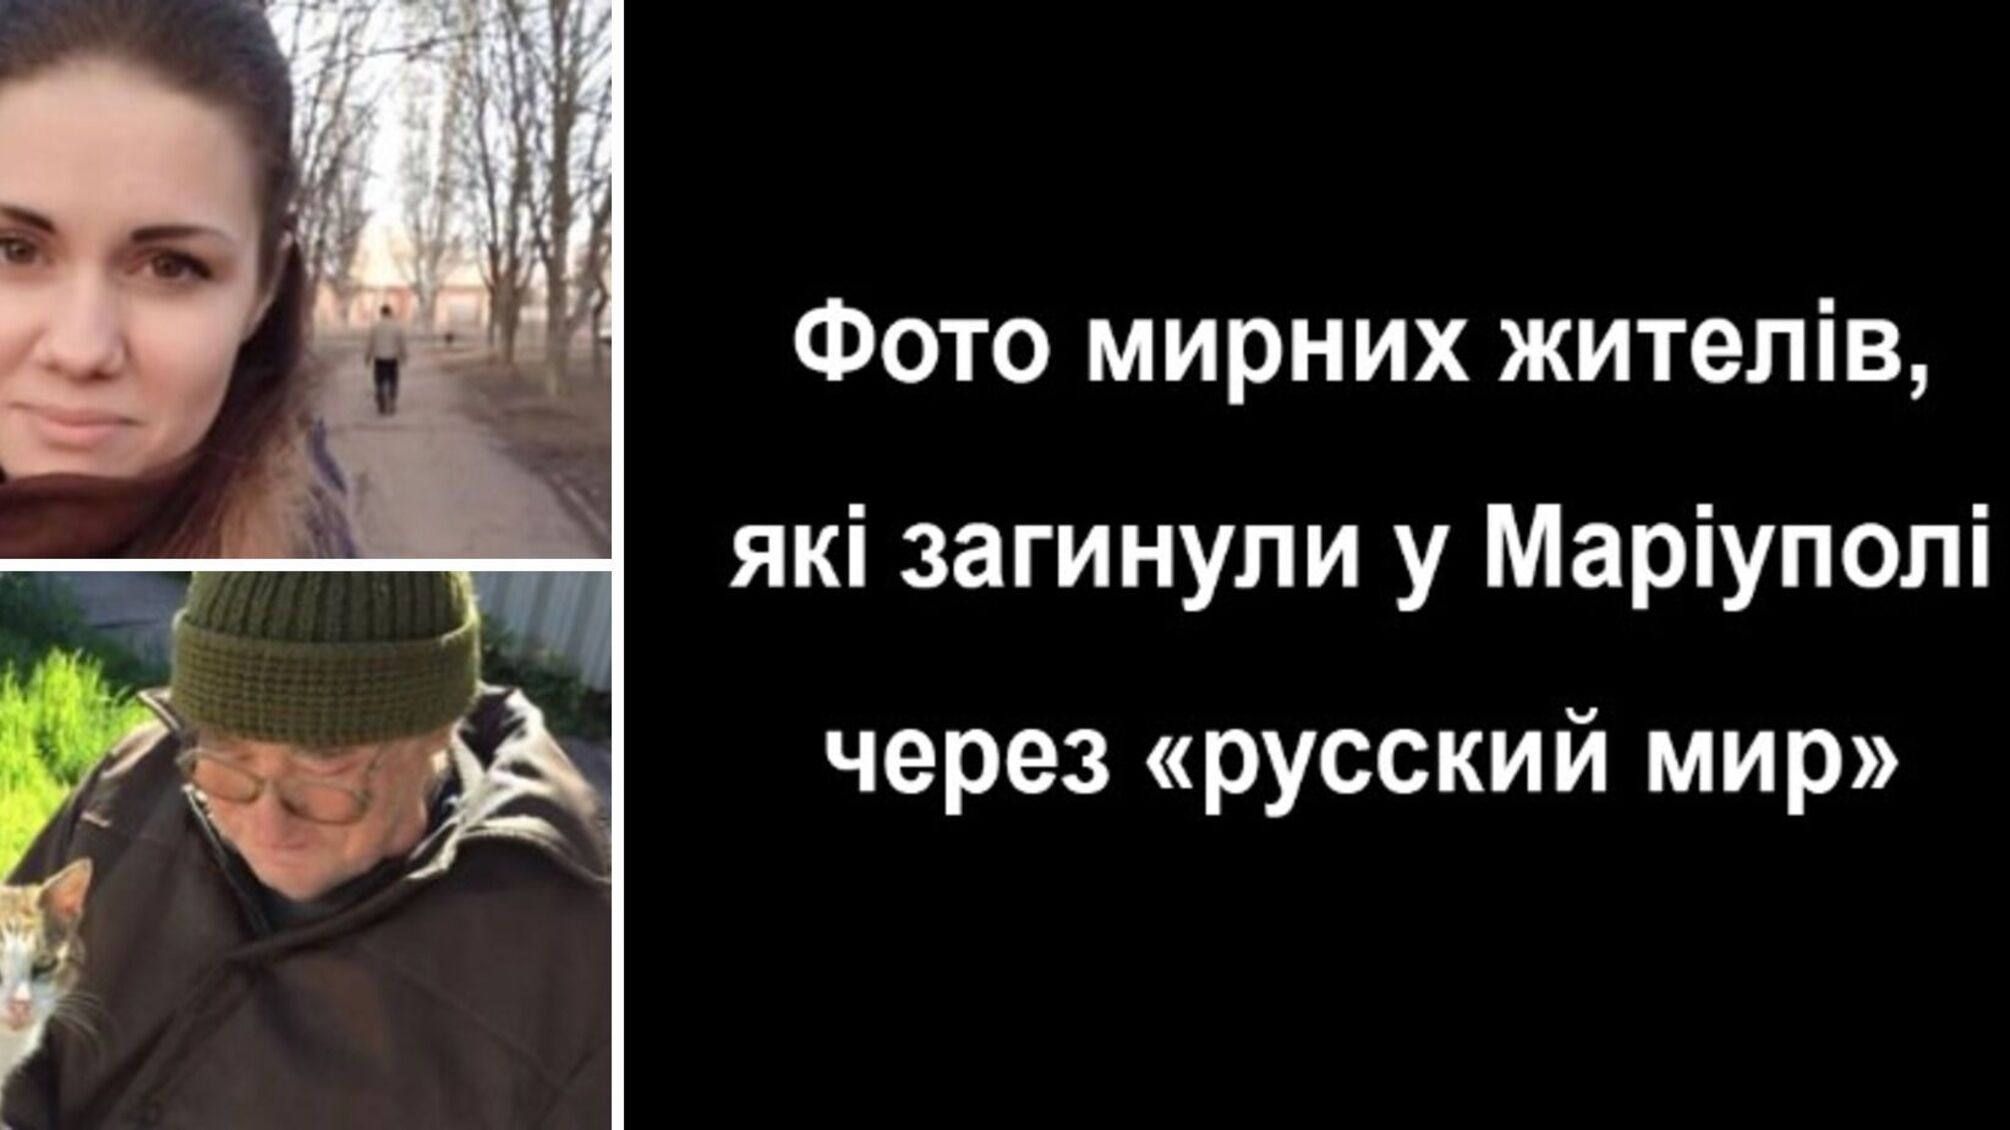 Украинцы показали фото мирных жителей, погибших в Мариуполе